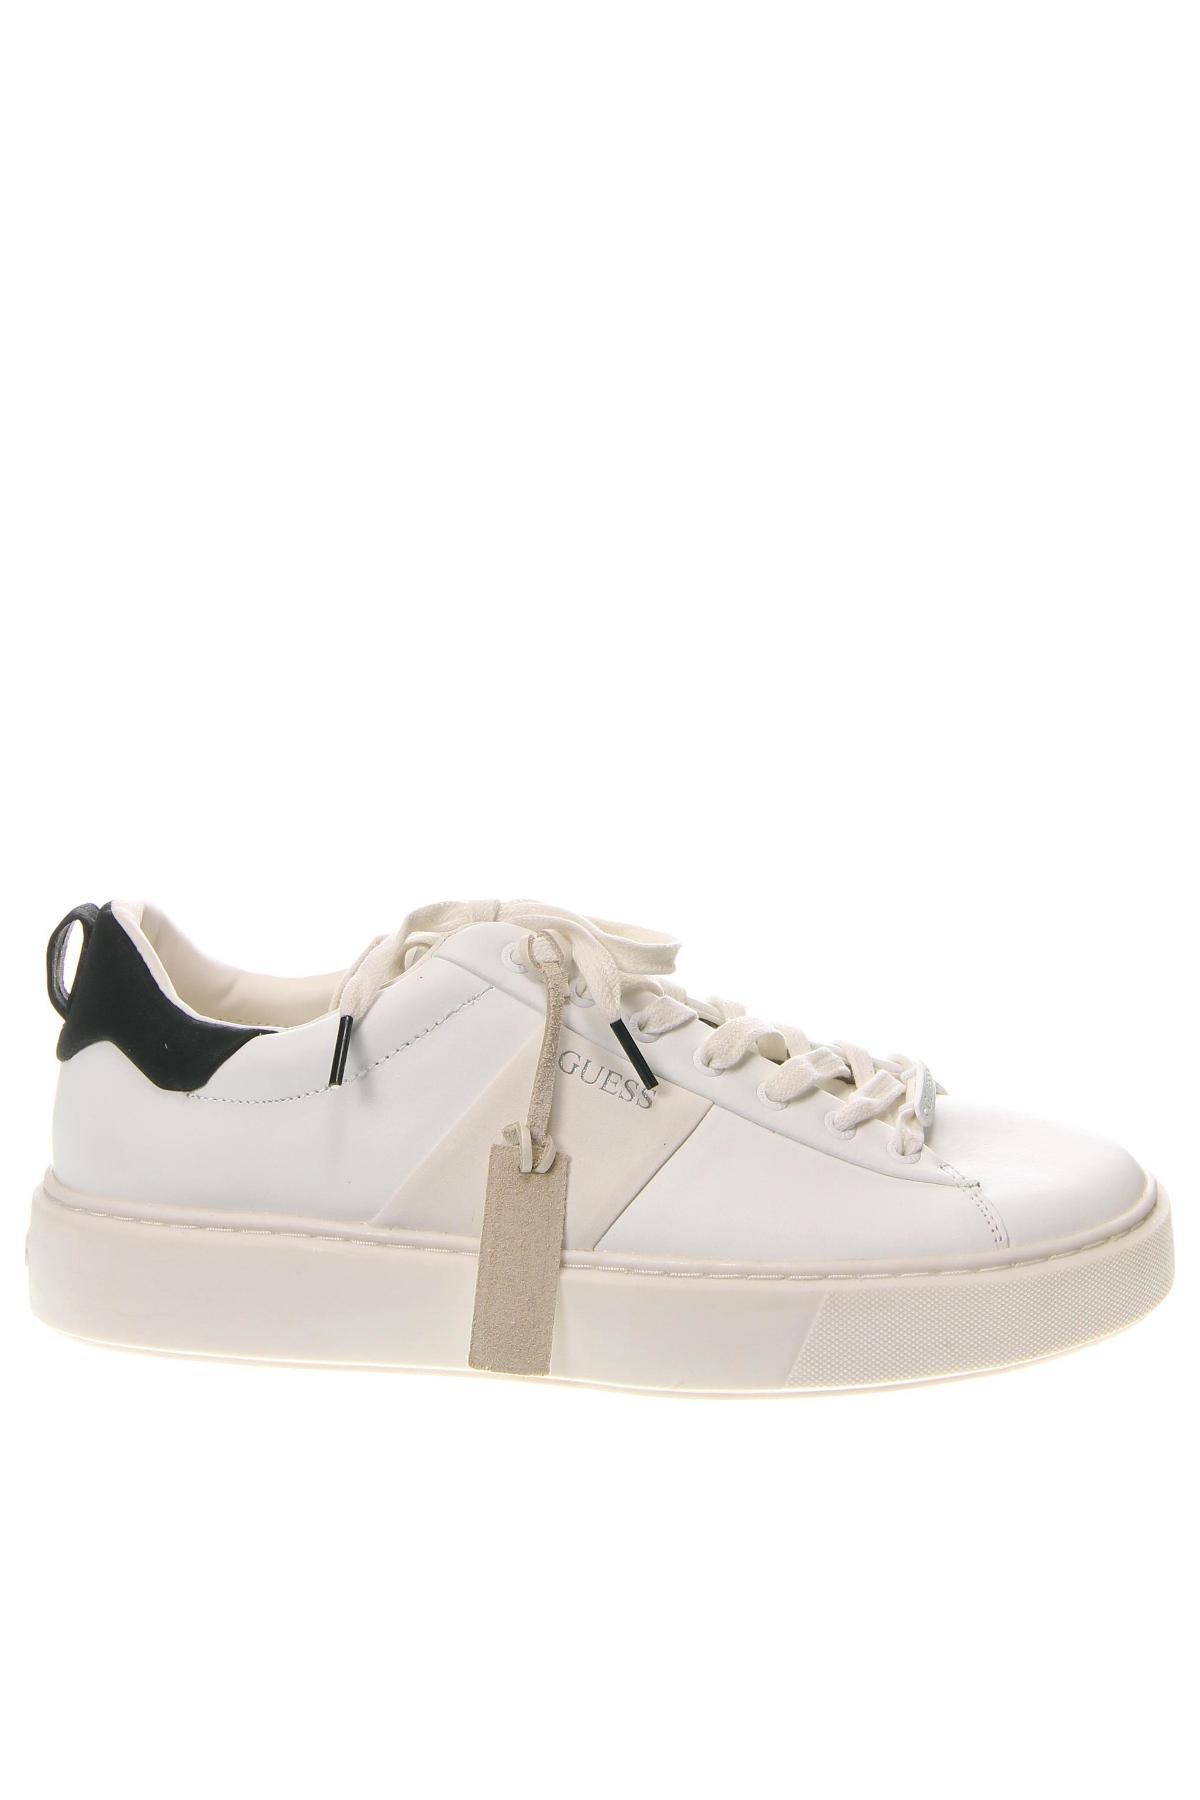 Ανδρικά παπούτσια Guess, Μέγεθος 44, Χρώμα Λευκό, Τιμή 78,80 €